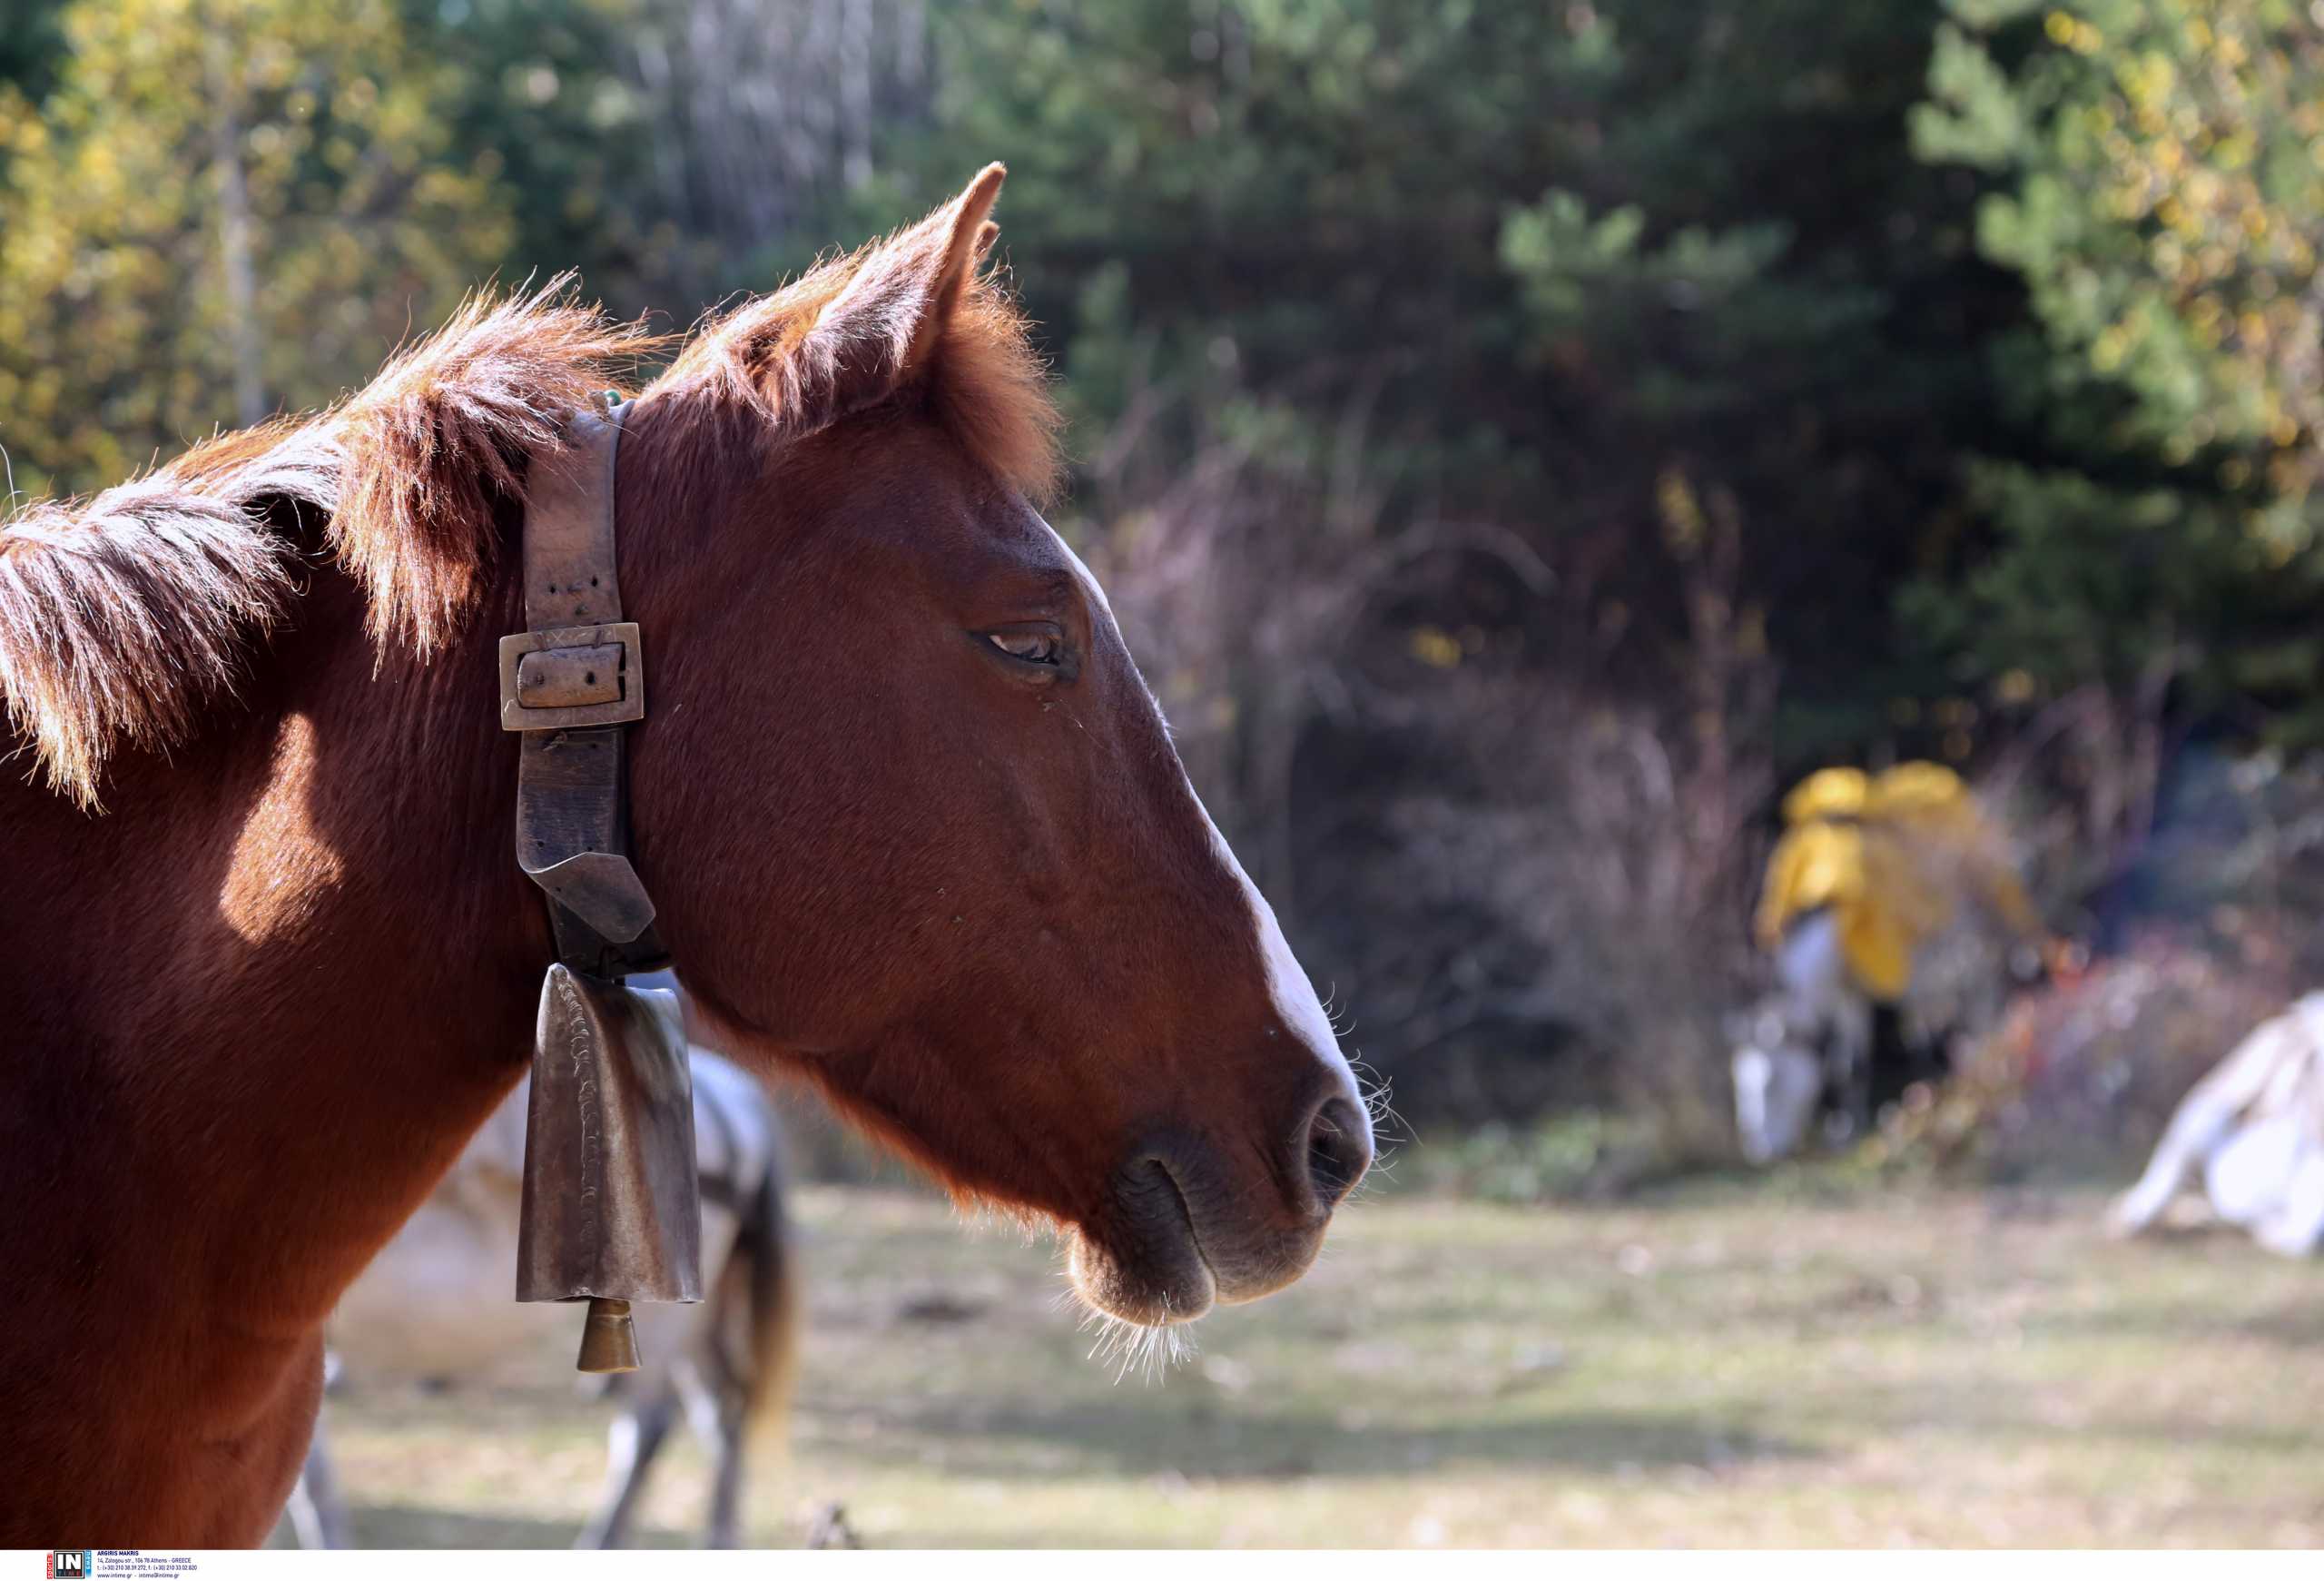 Ναυπακτία: Χαροπαλεύουν δύο νέα παιδιά όταν το μηχανάκι που επέβαιναν συγκρούστηκε με αφηνιασμένο άλογο